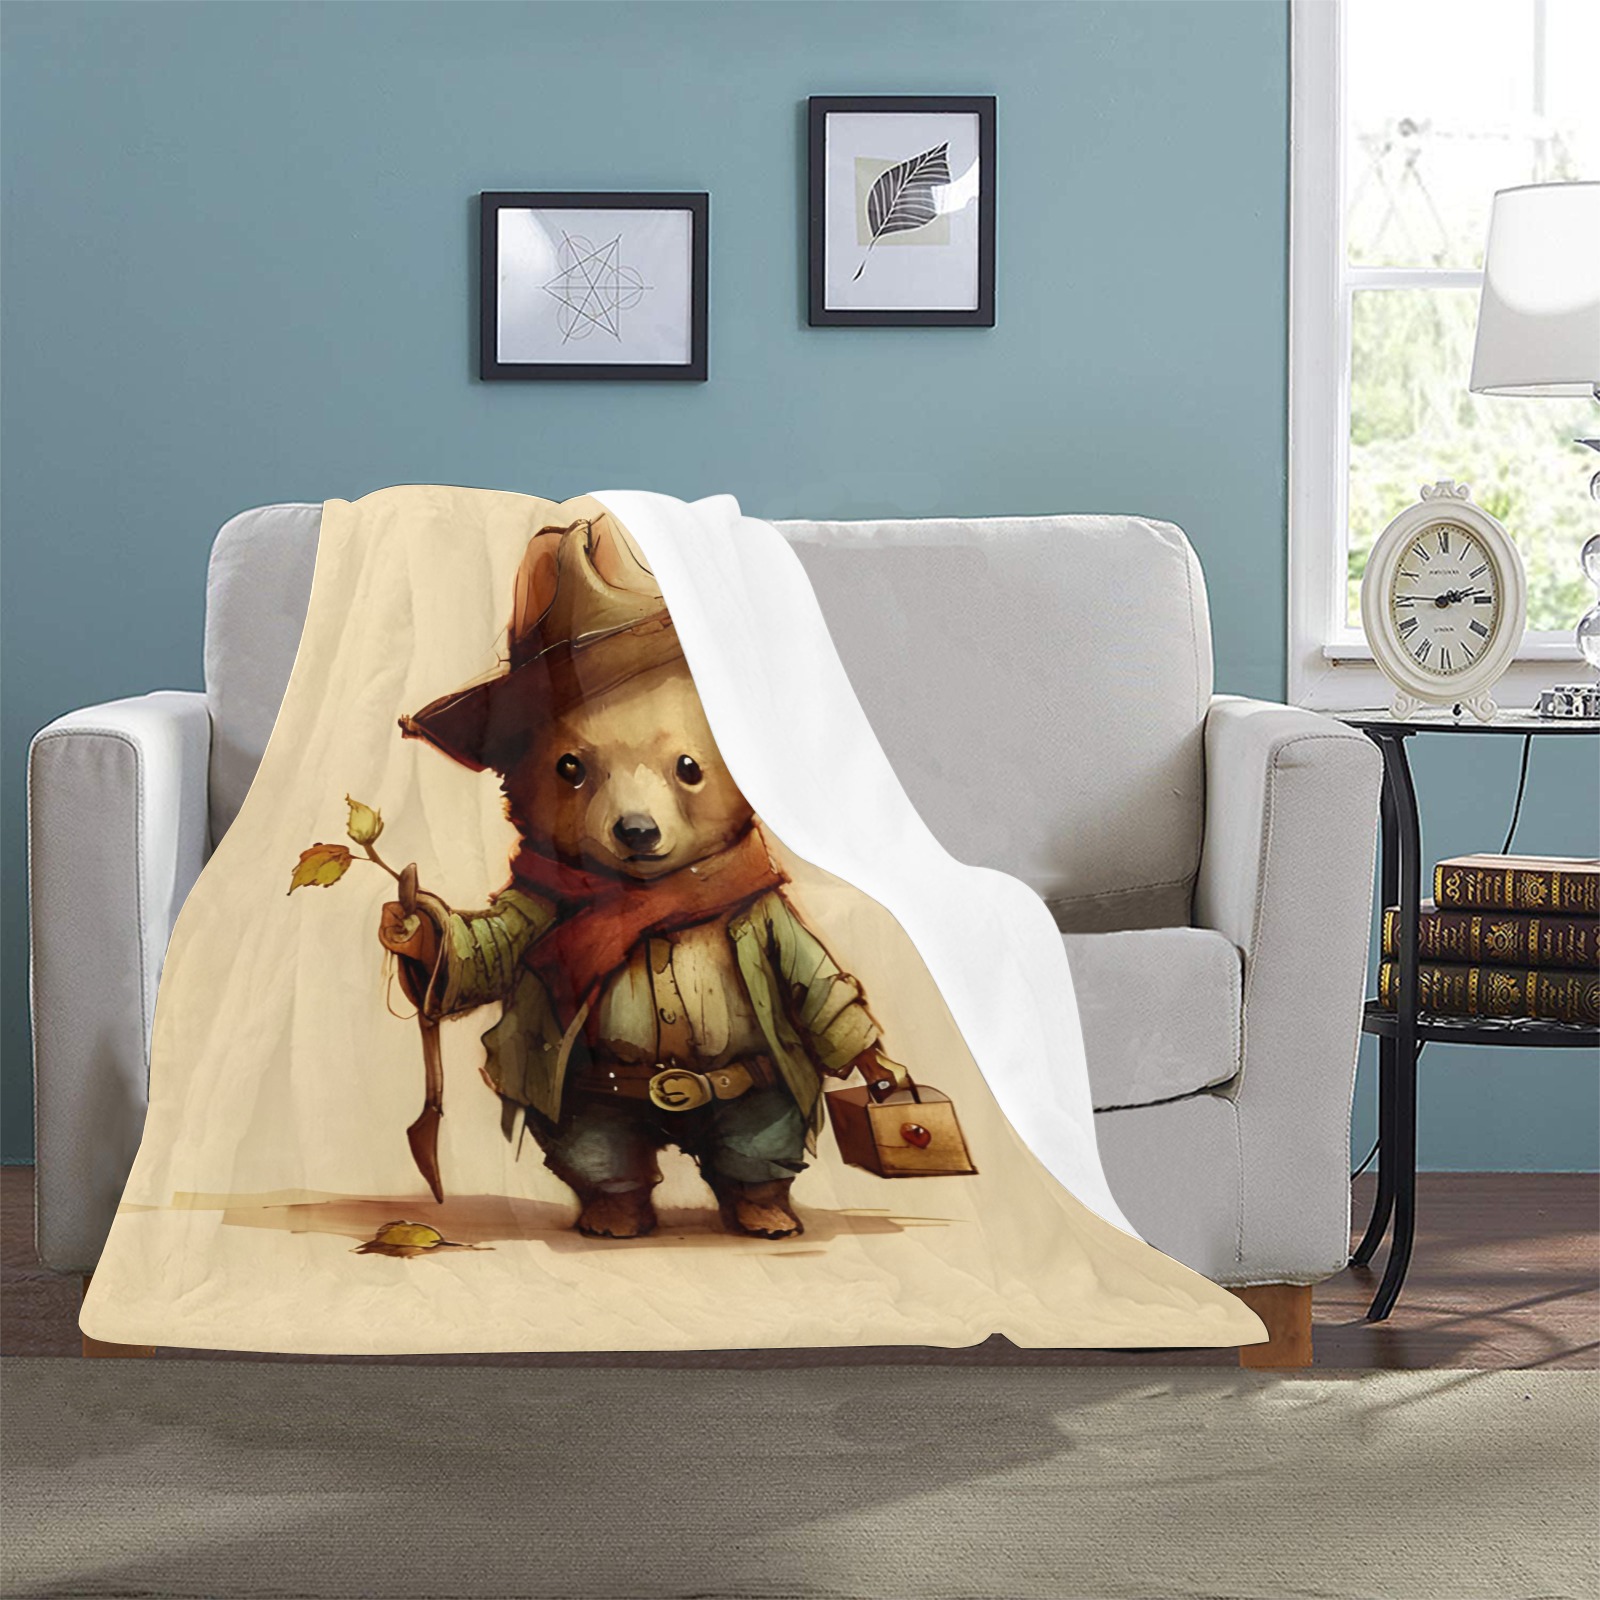 Little Bears 2 Ultra-Soft Micro Fleece Blanket 32"x48"